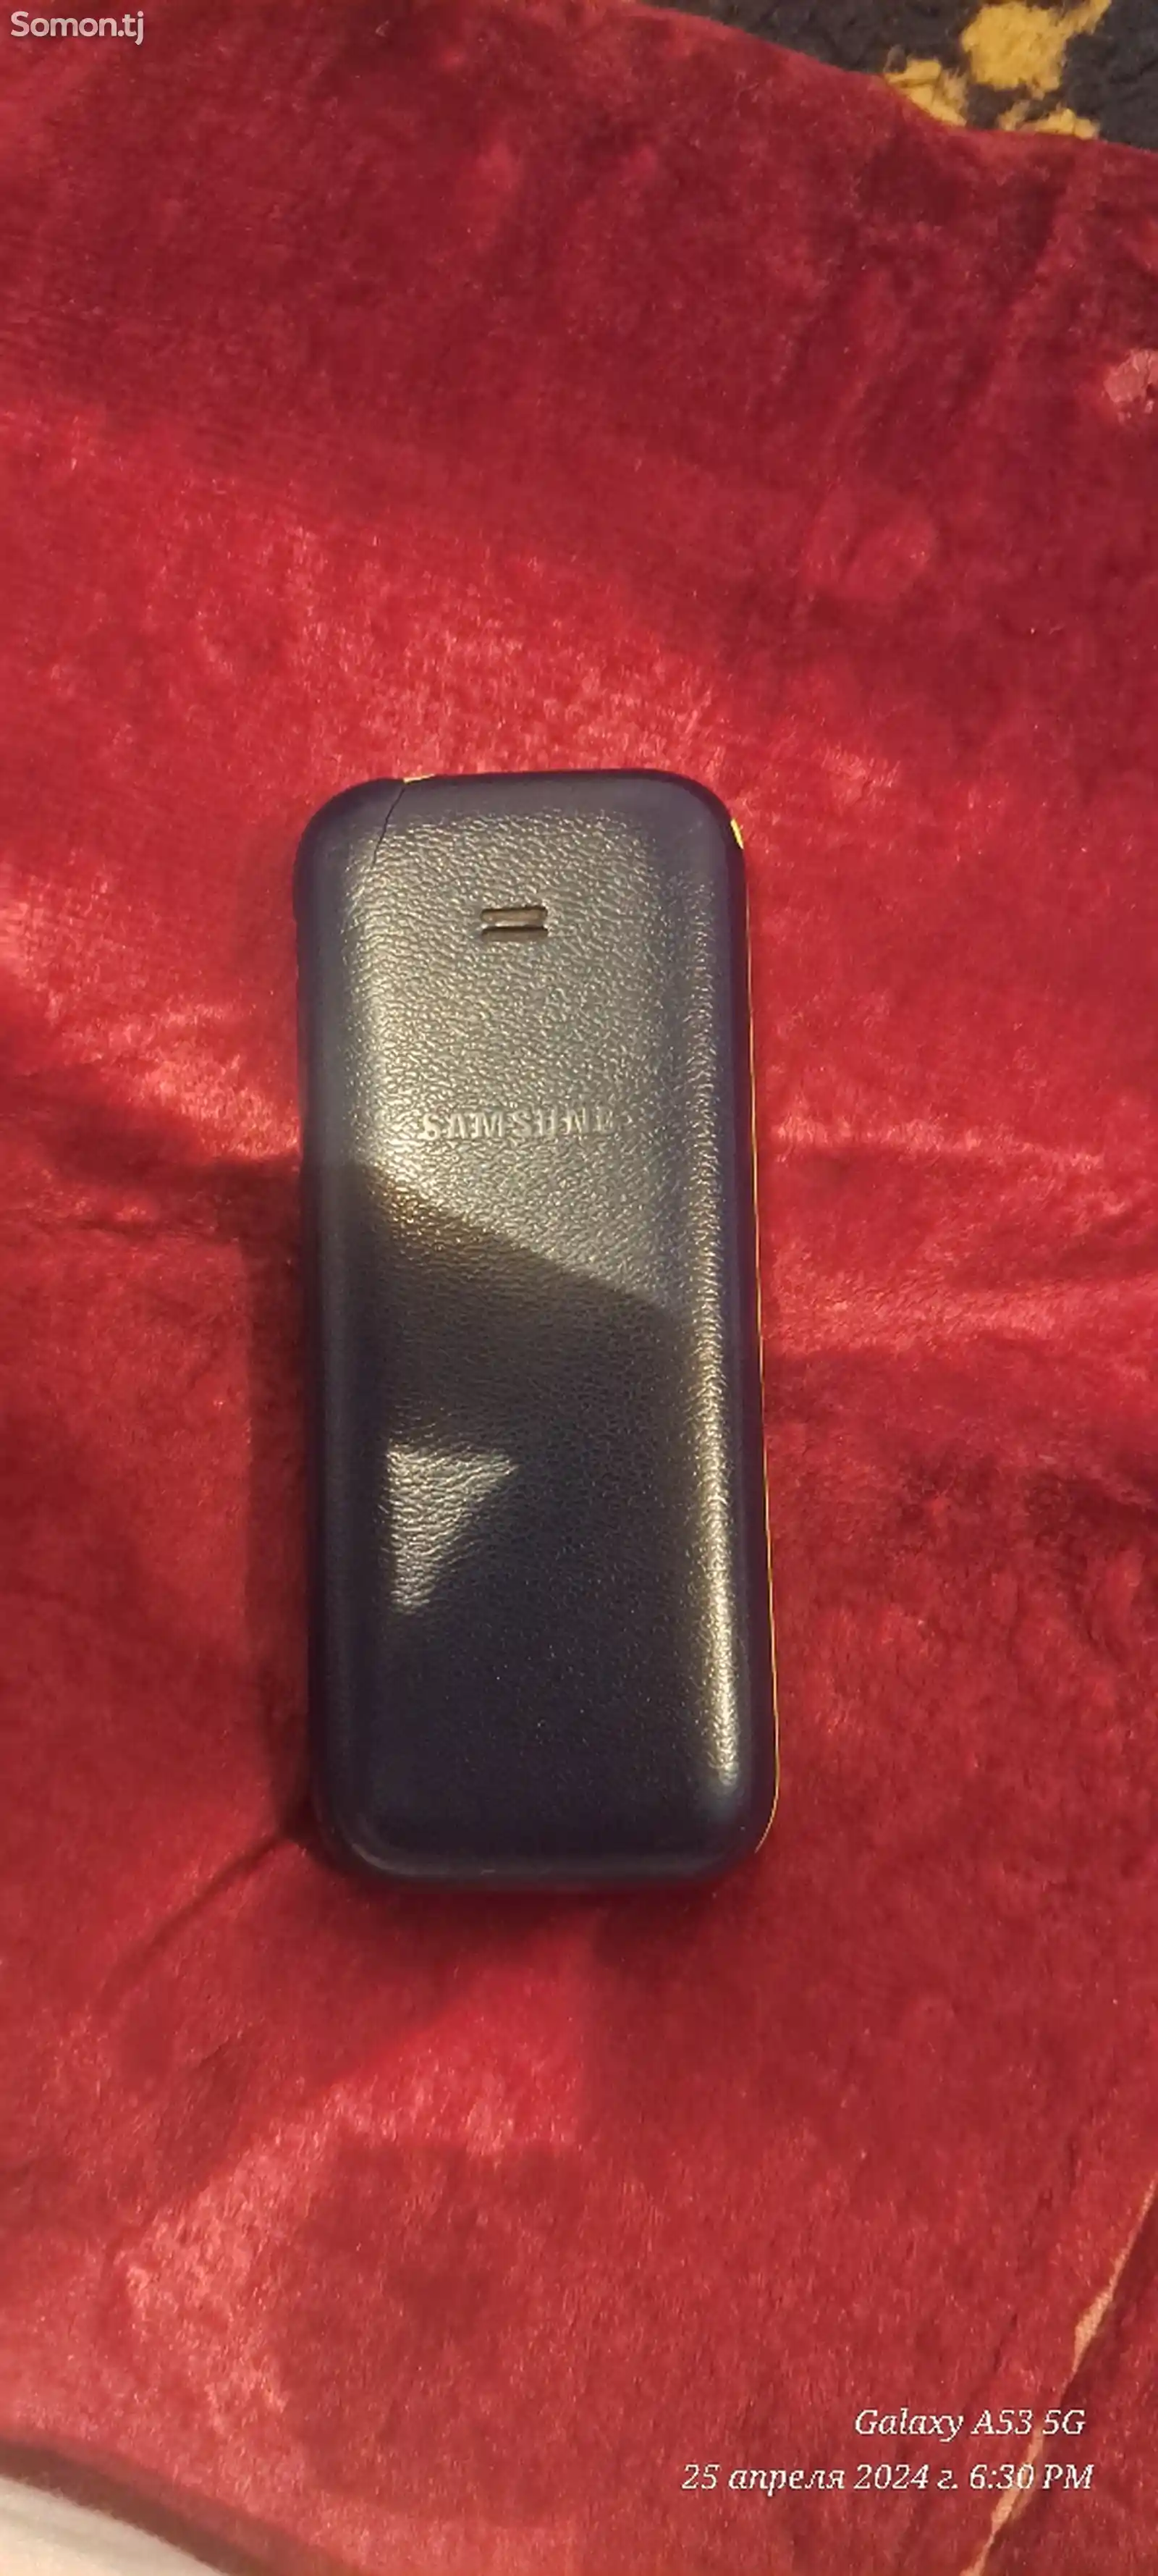 Samsung B310E-2